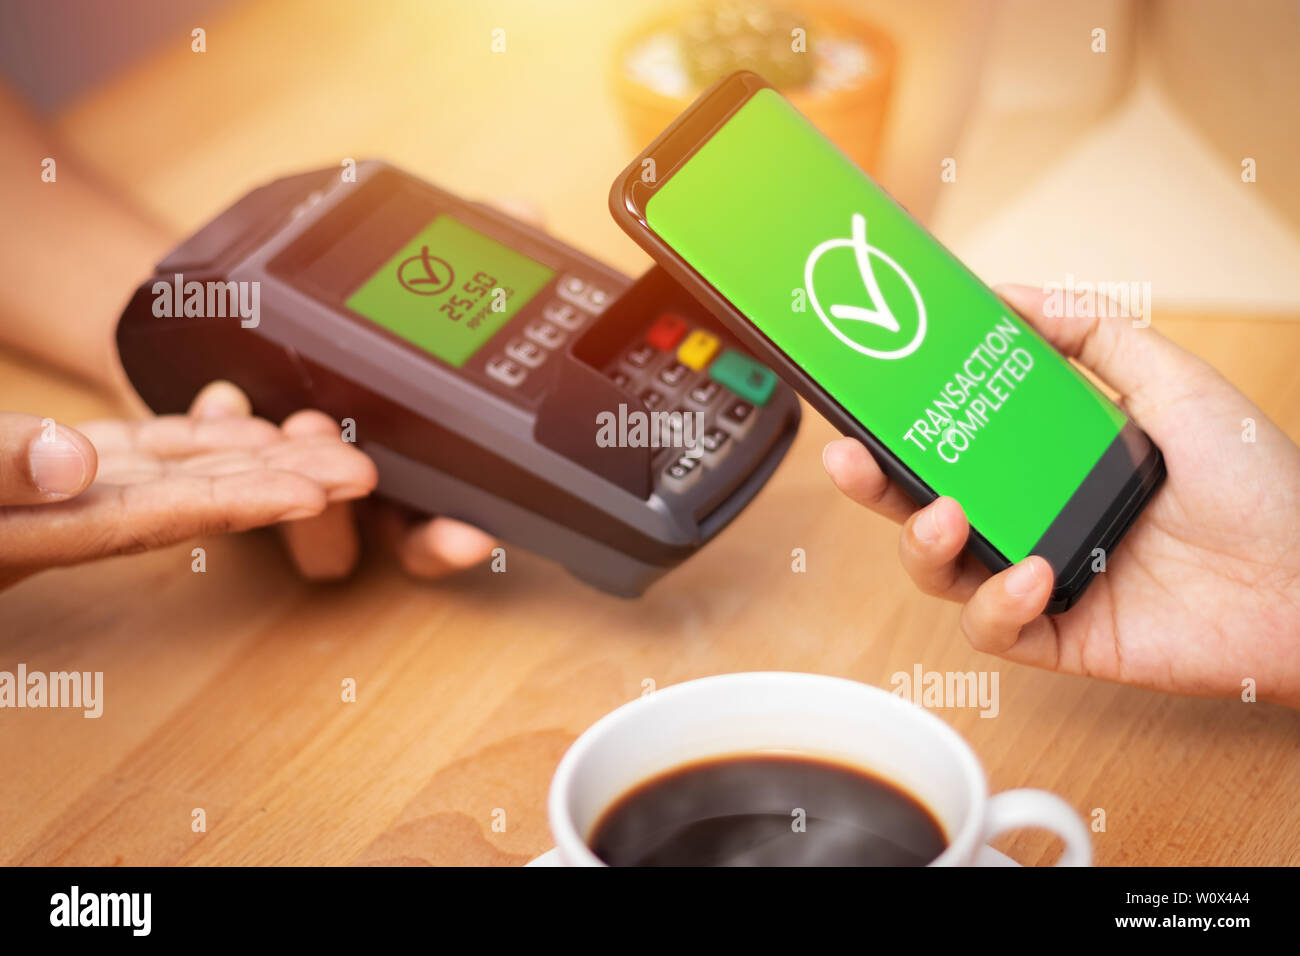 Bargeldlose Gesellschaft, Kunde zahlt Rechnung durch das Smartphone mit der NFC-Technologie am Point of Sale Terminal in Cafe. Mobile Digital Wallet Technologie con Stockfoto